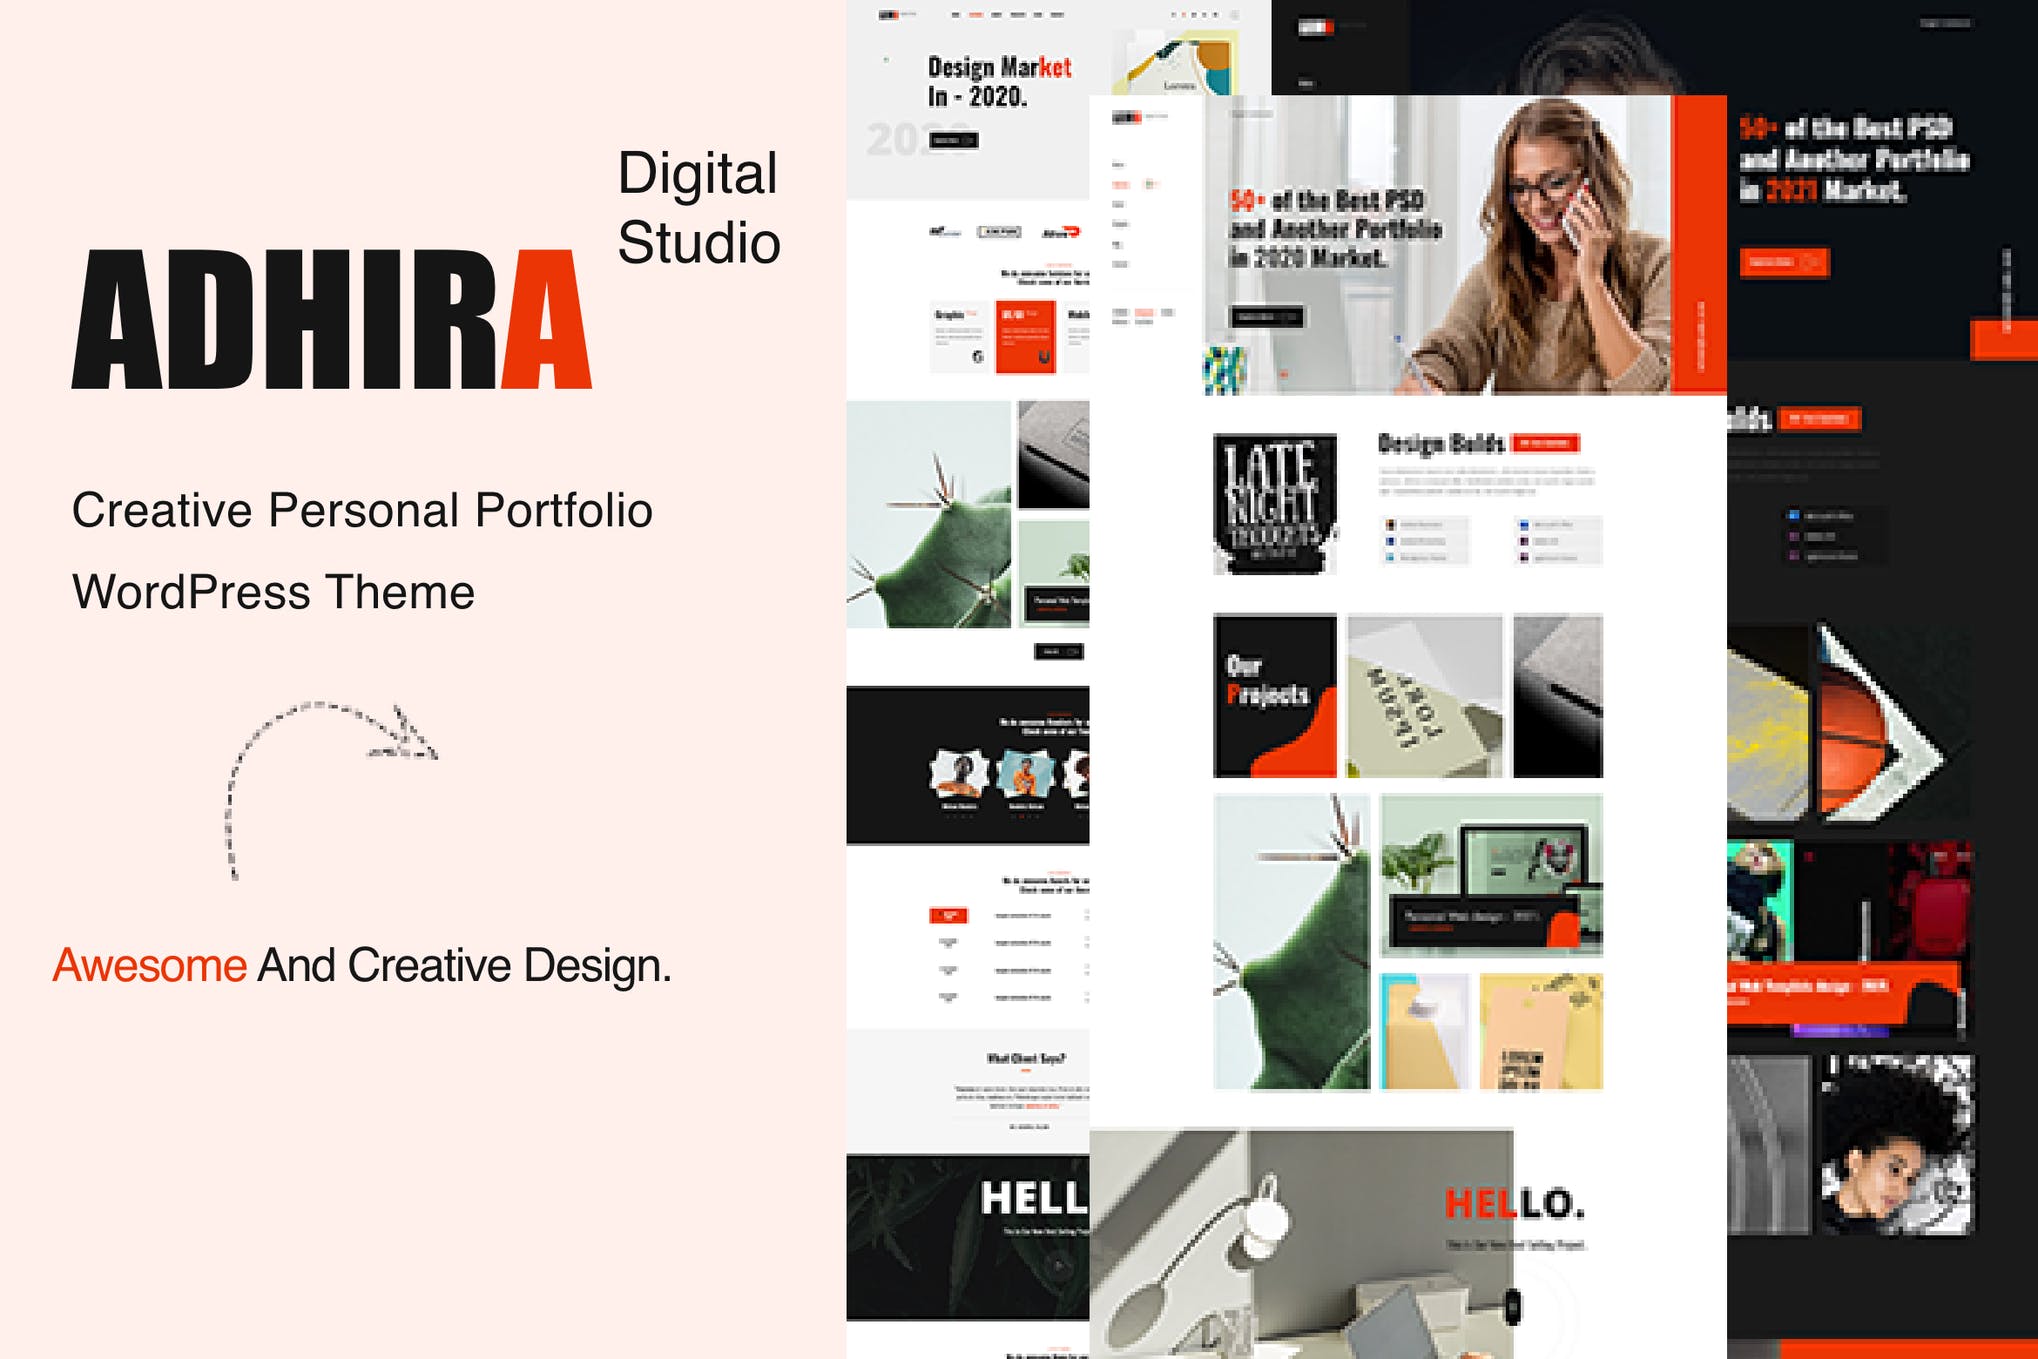 Gambiato-Adhira - Creative Agency Portfolio WordPress Theme.jpeg